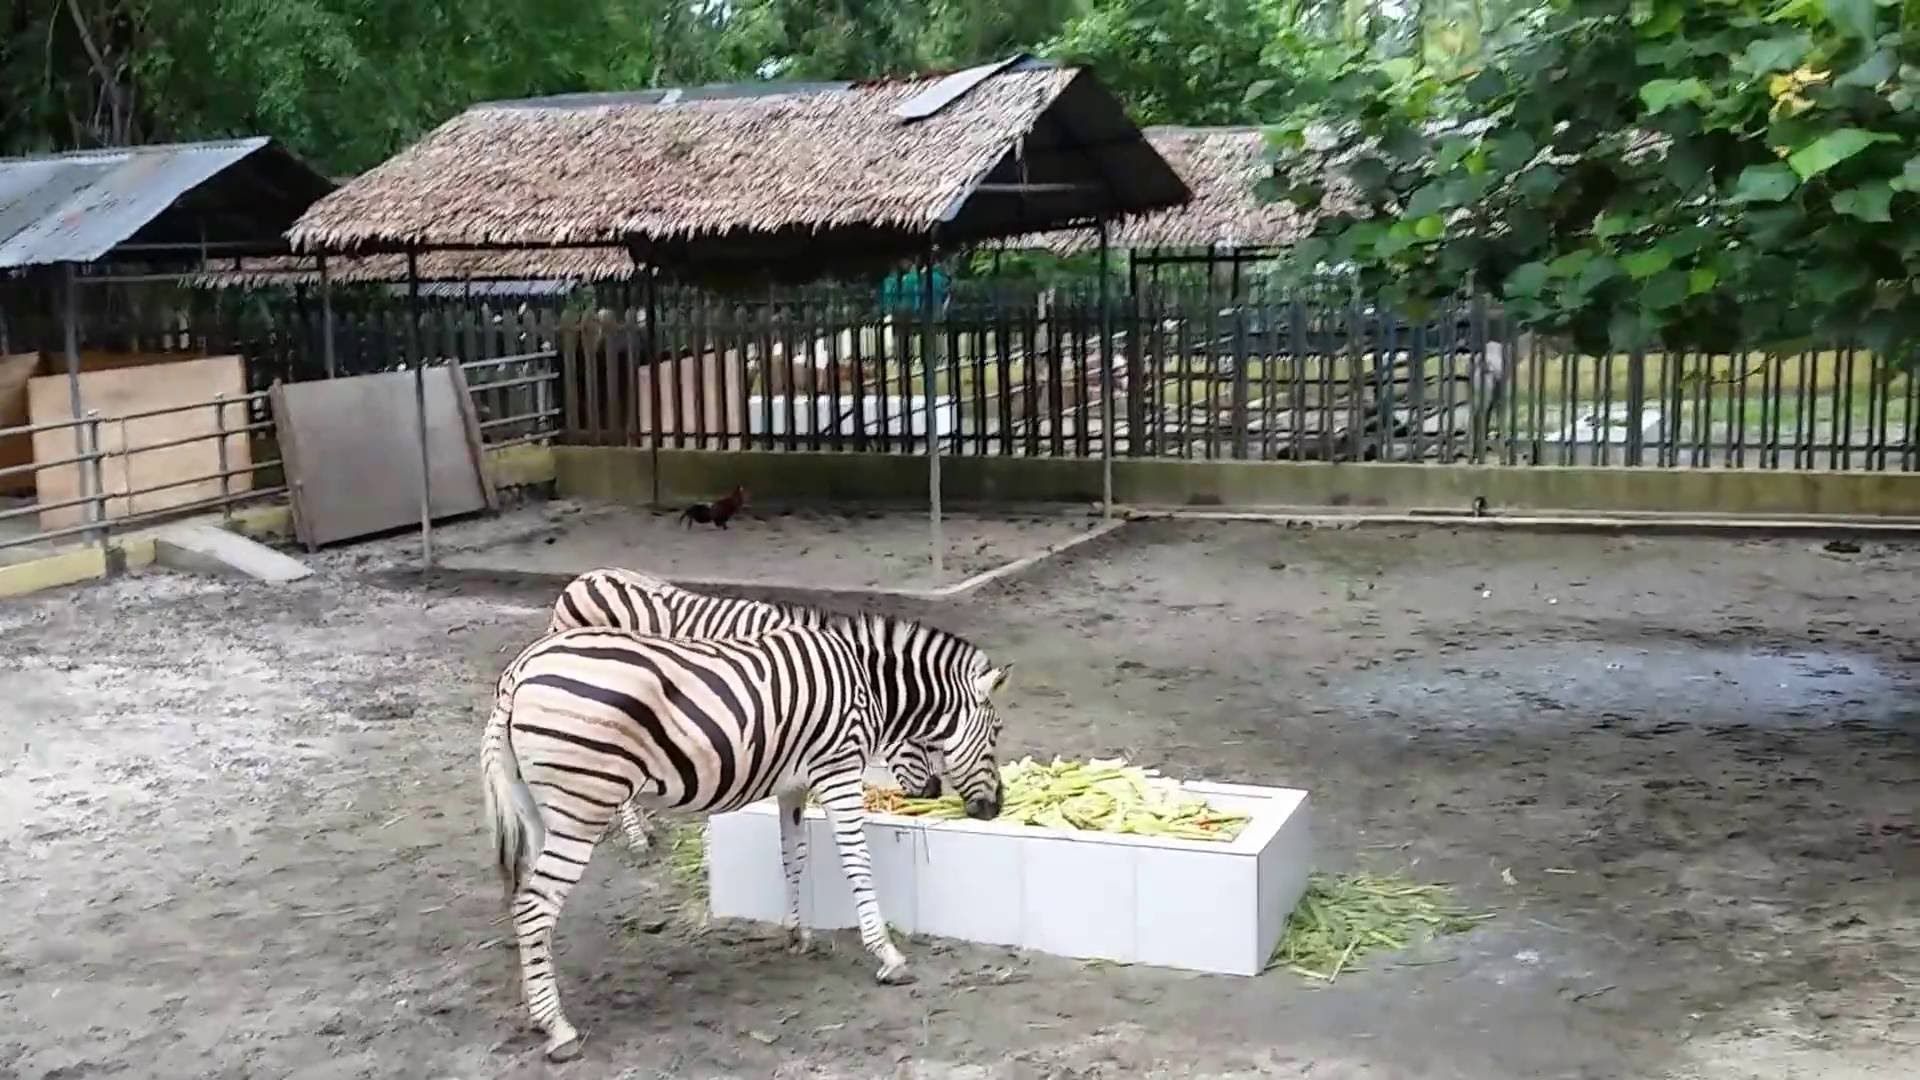 Kebun Binatang Terbaik Di Indonesia Yang Harus Dikunjungi Sebelum